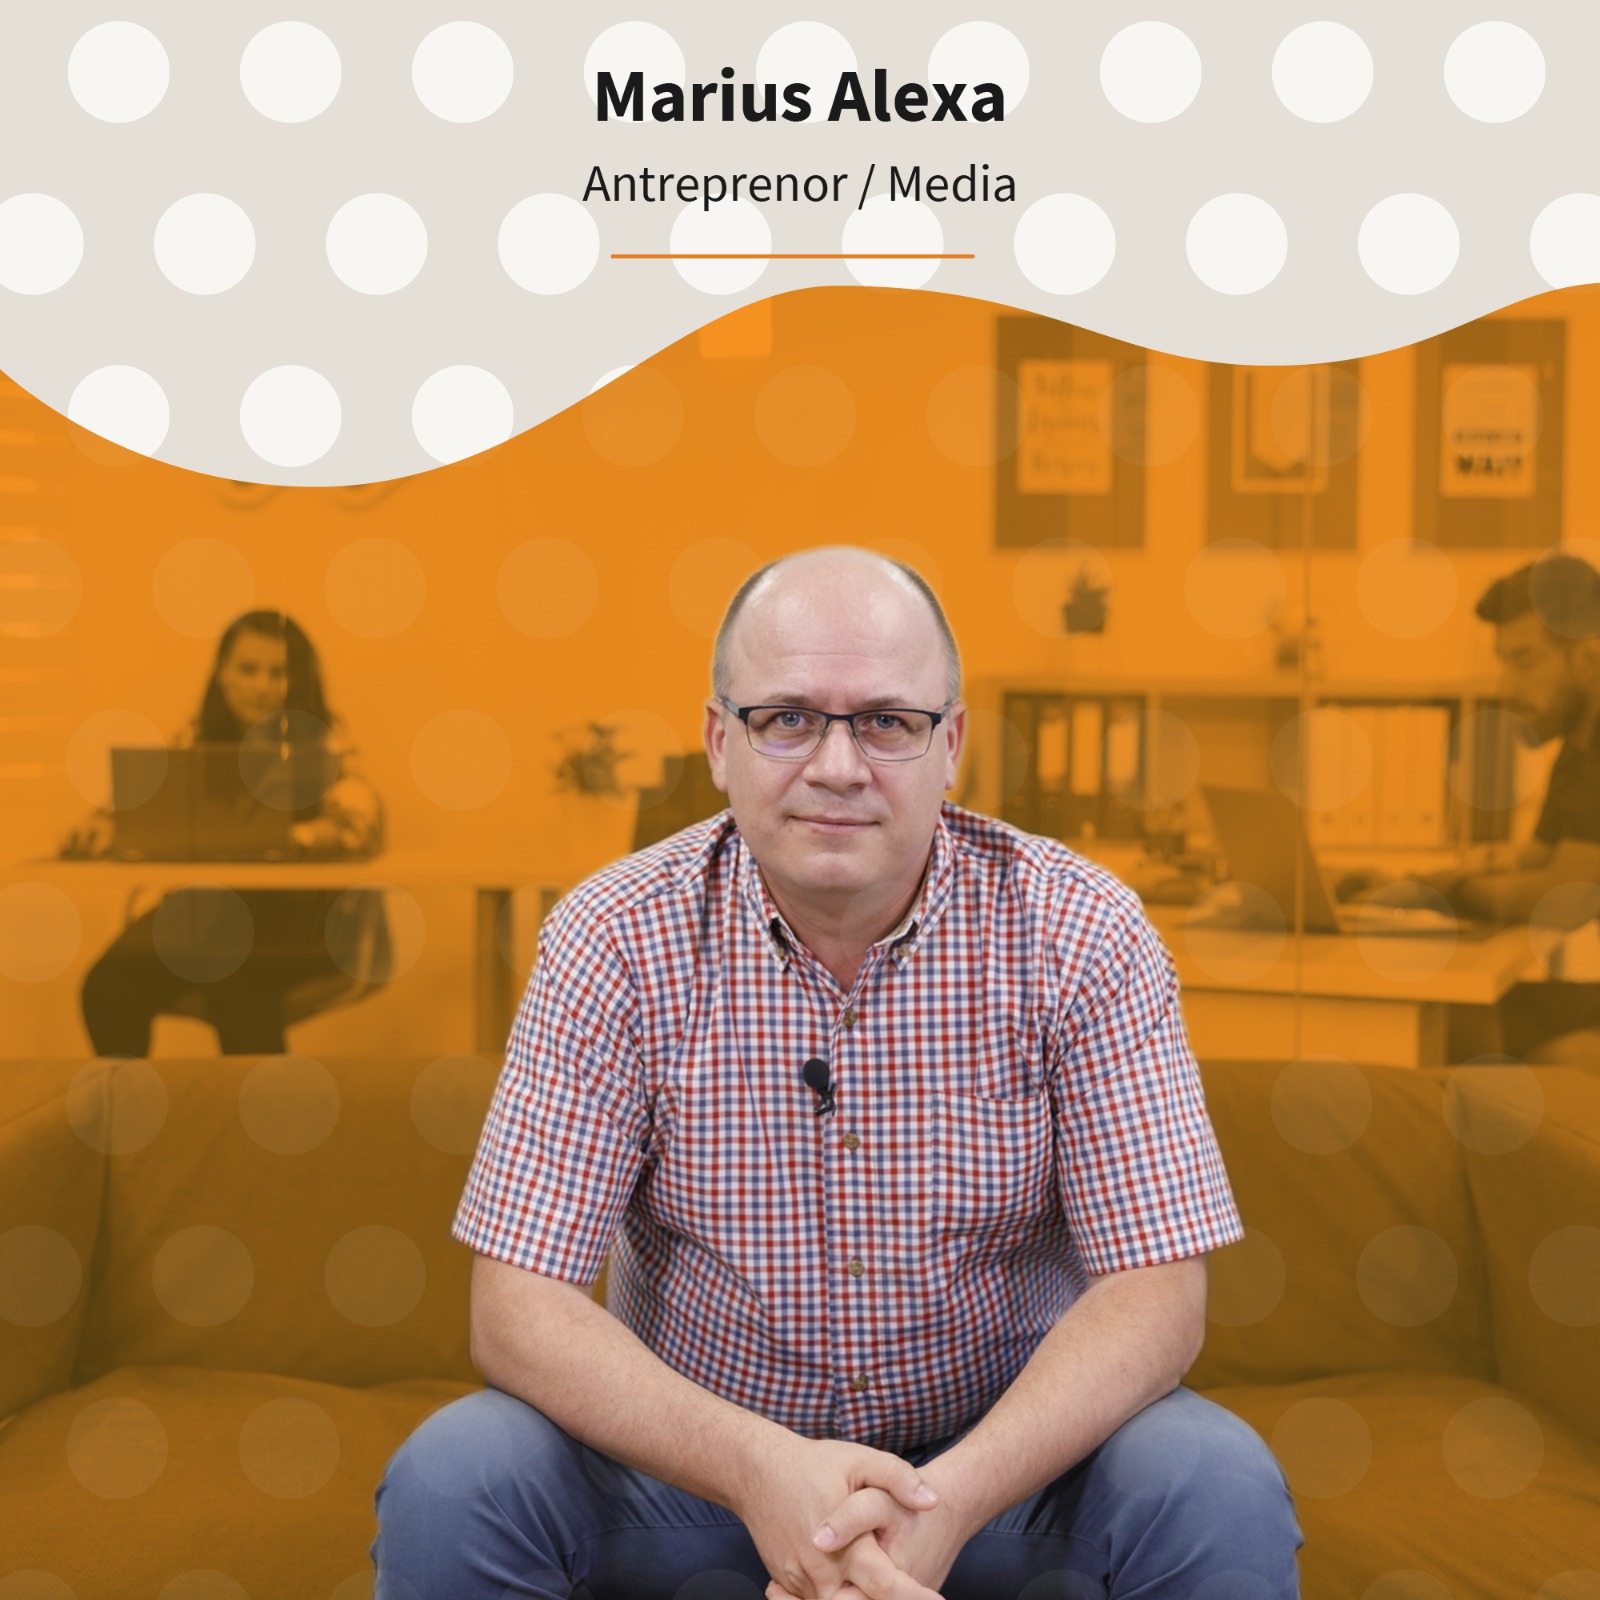 Marius Alexa